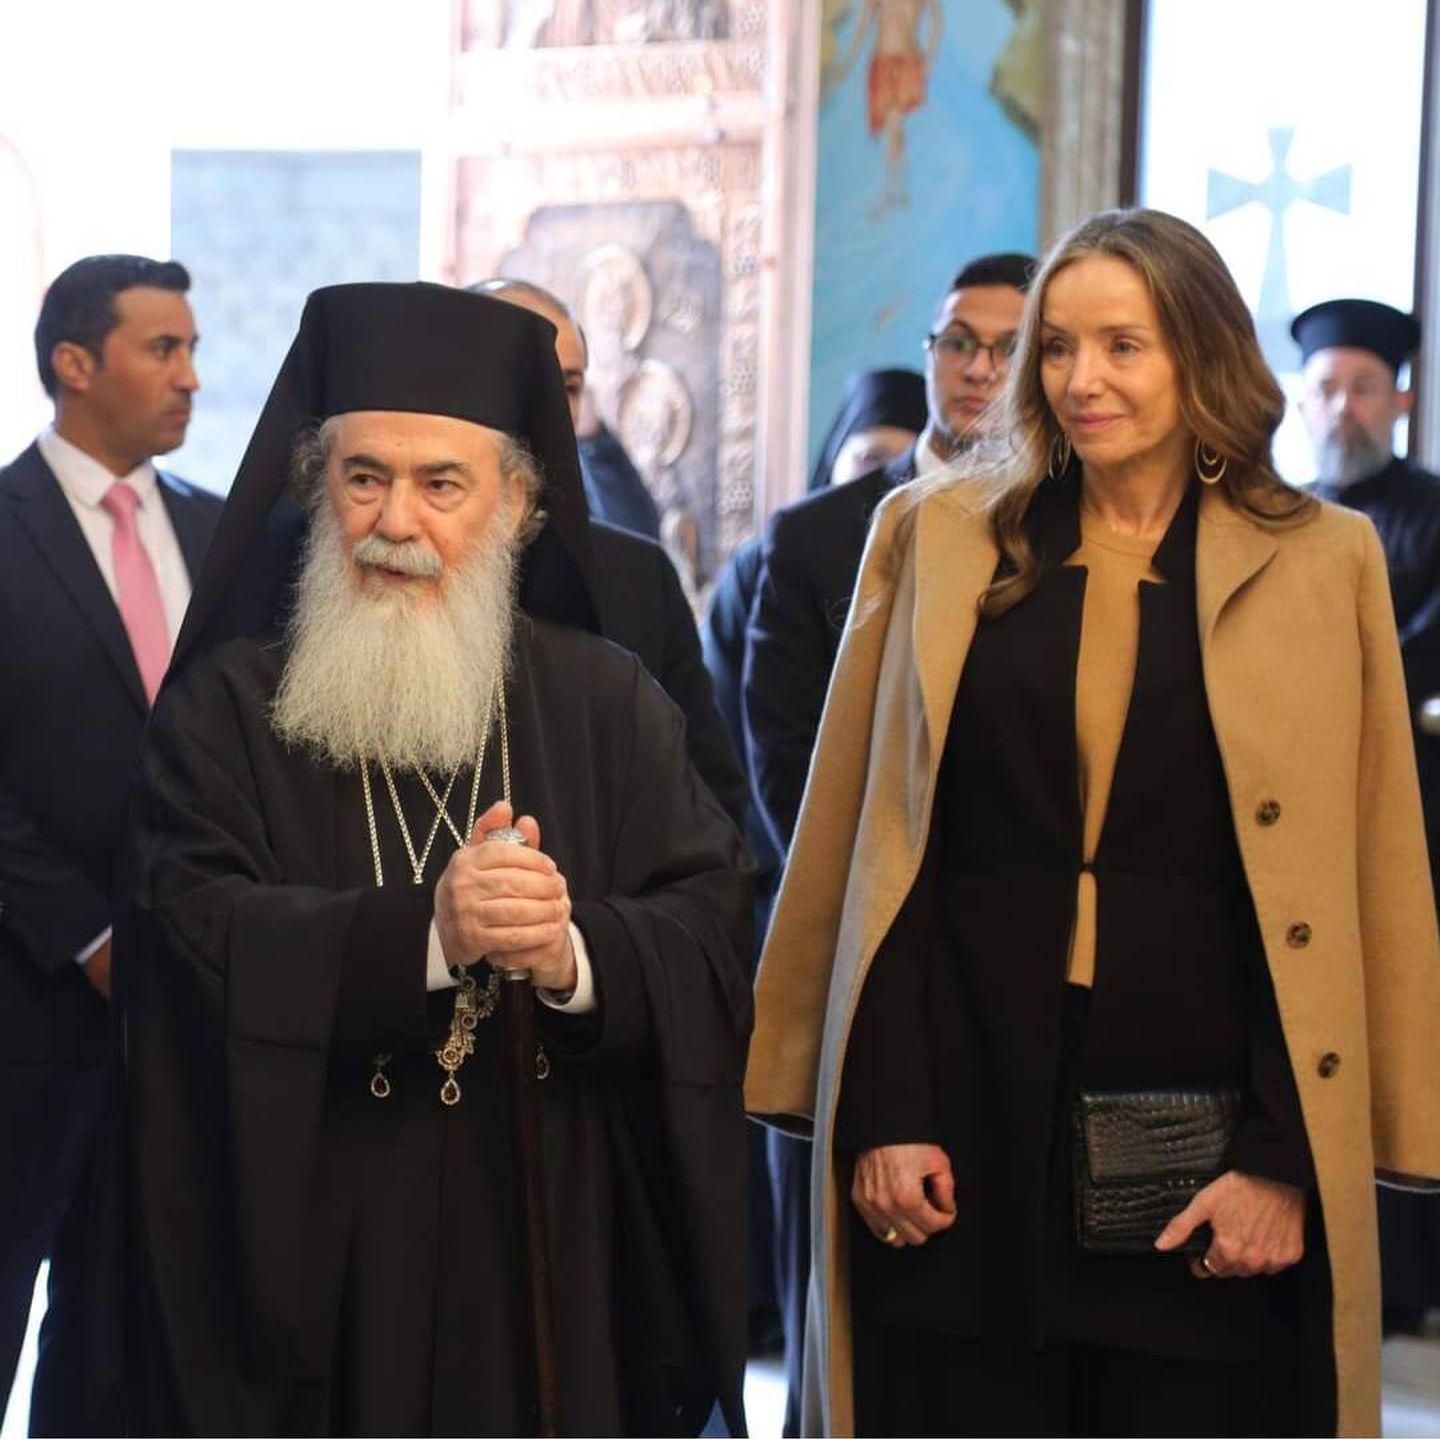 Miriam de Ungría, en el acto de inauguración de la iglesia ortodoxa. (Patriarcado de Jerusalén)